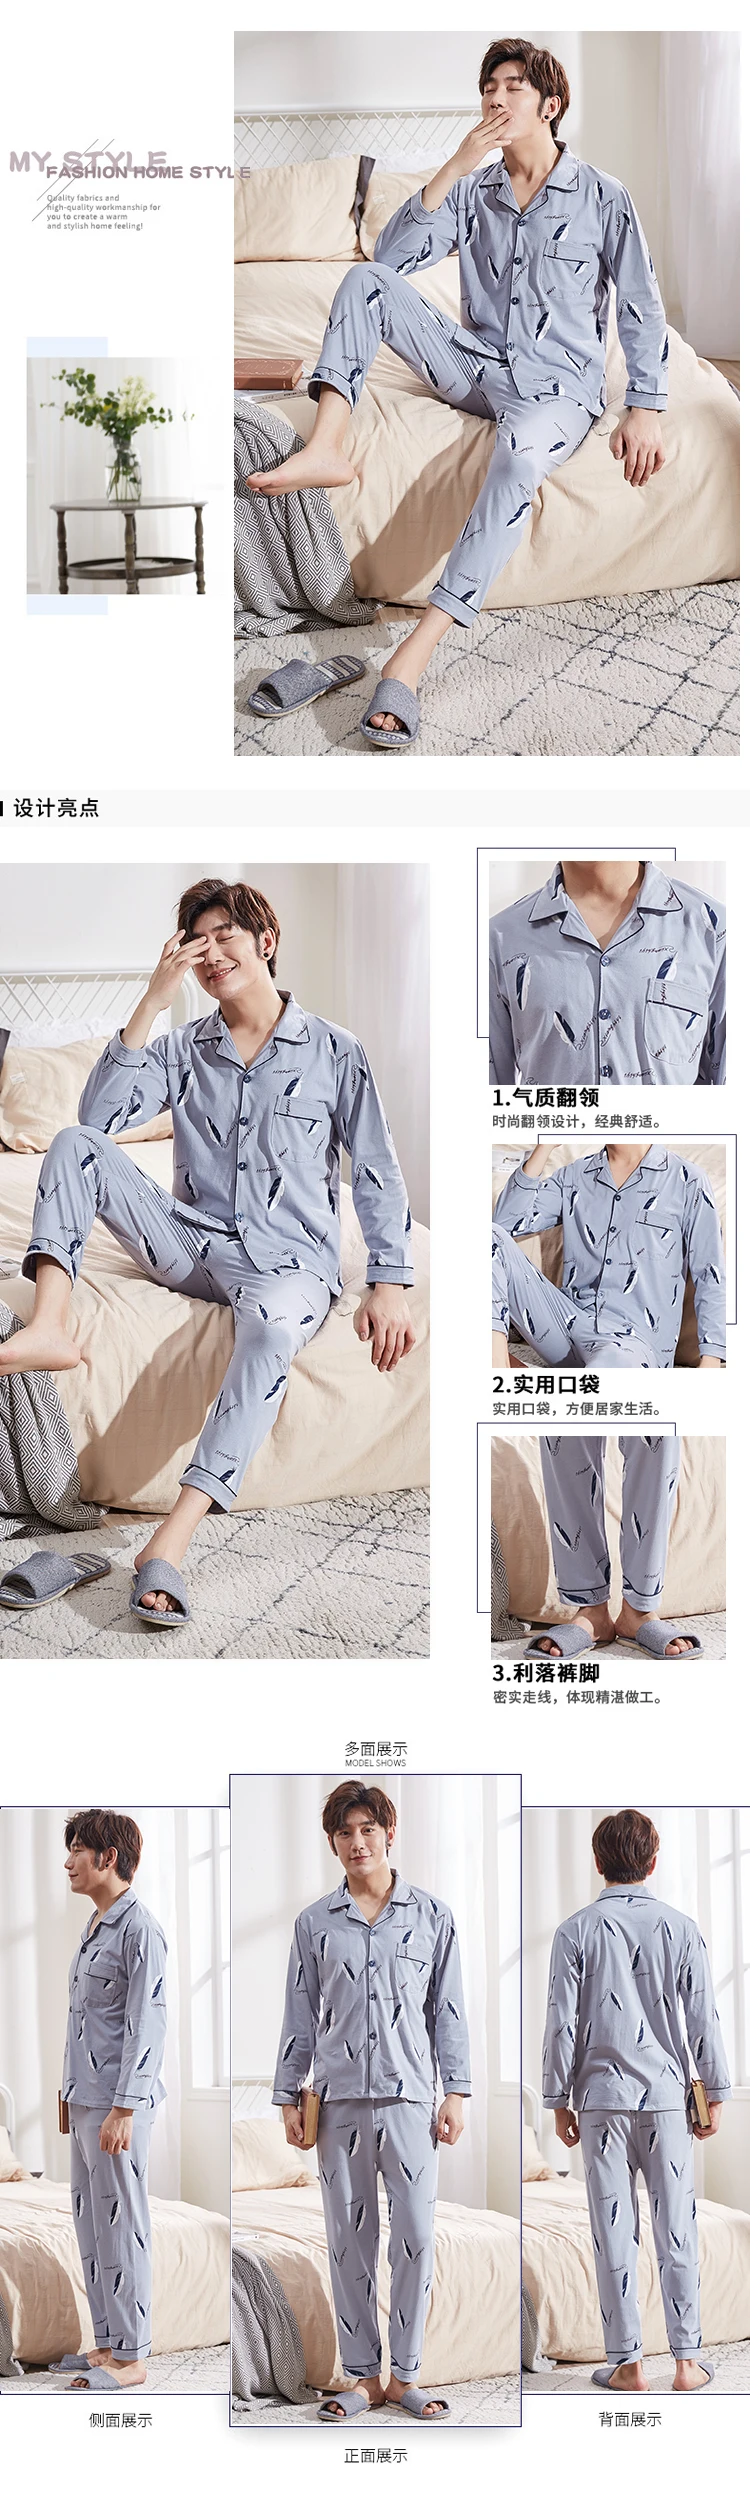 2018 корейский с длинным рукавом для мужчин Пижама наборы для ухода за кожей зима осень модные повседневное s печати пижамы хлоп